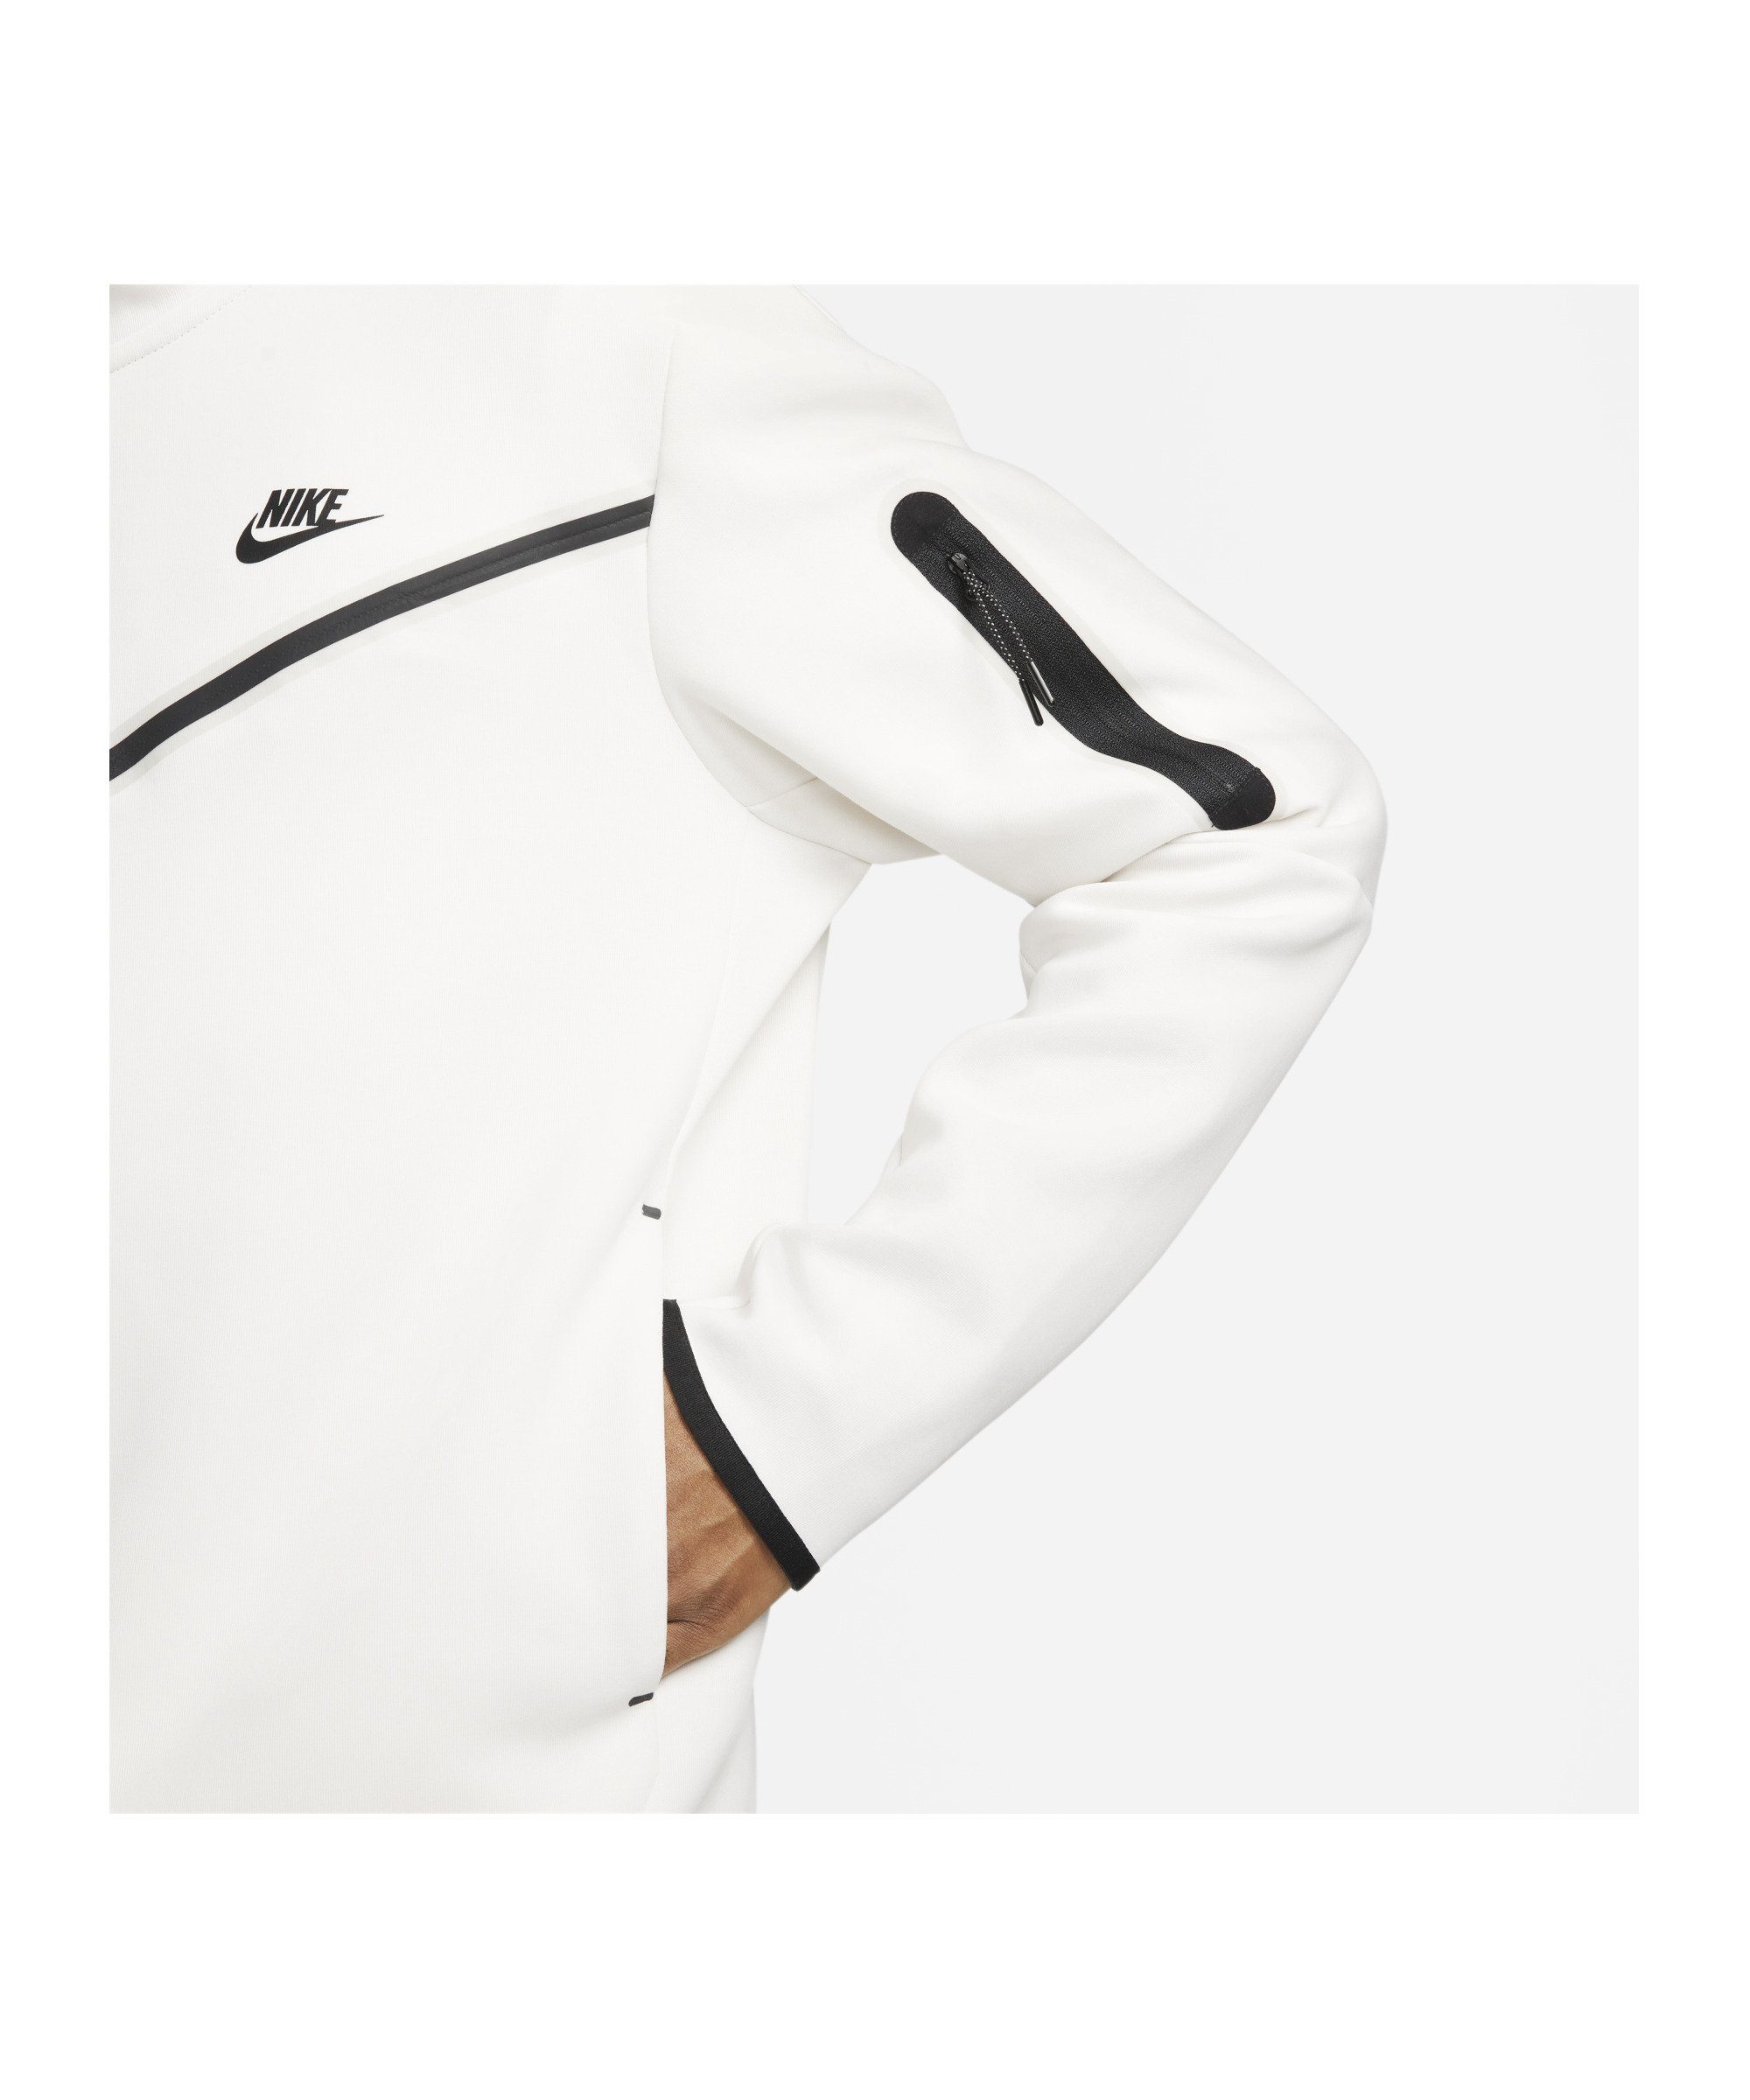 Tech grauschwarz Sweatjacke Sportswear Nike Windrunner Fleece